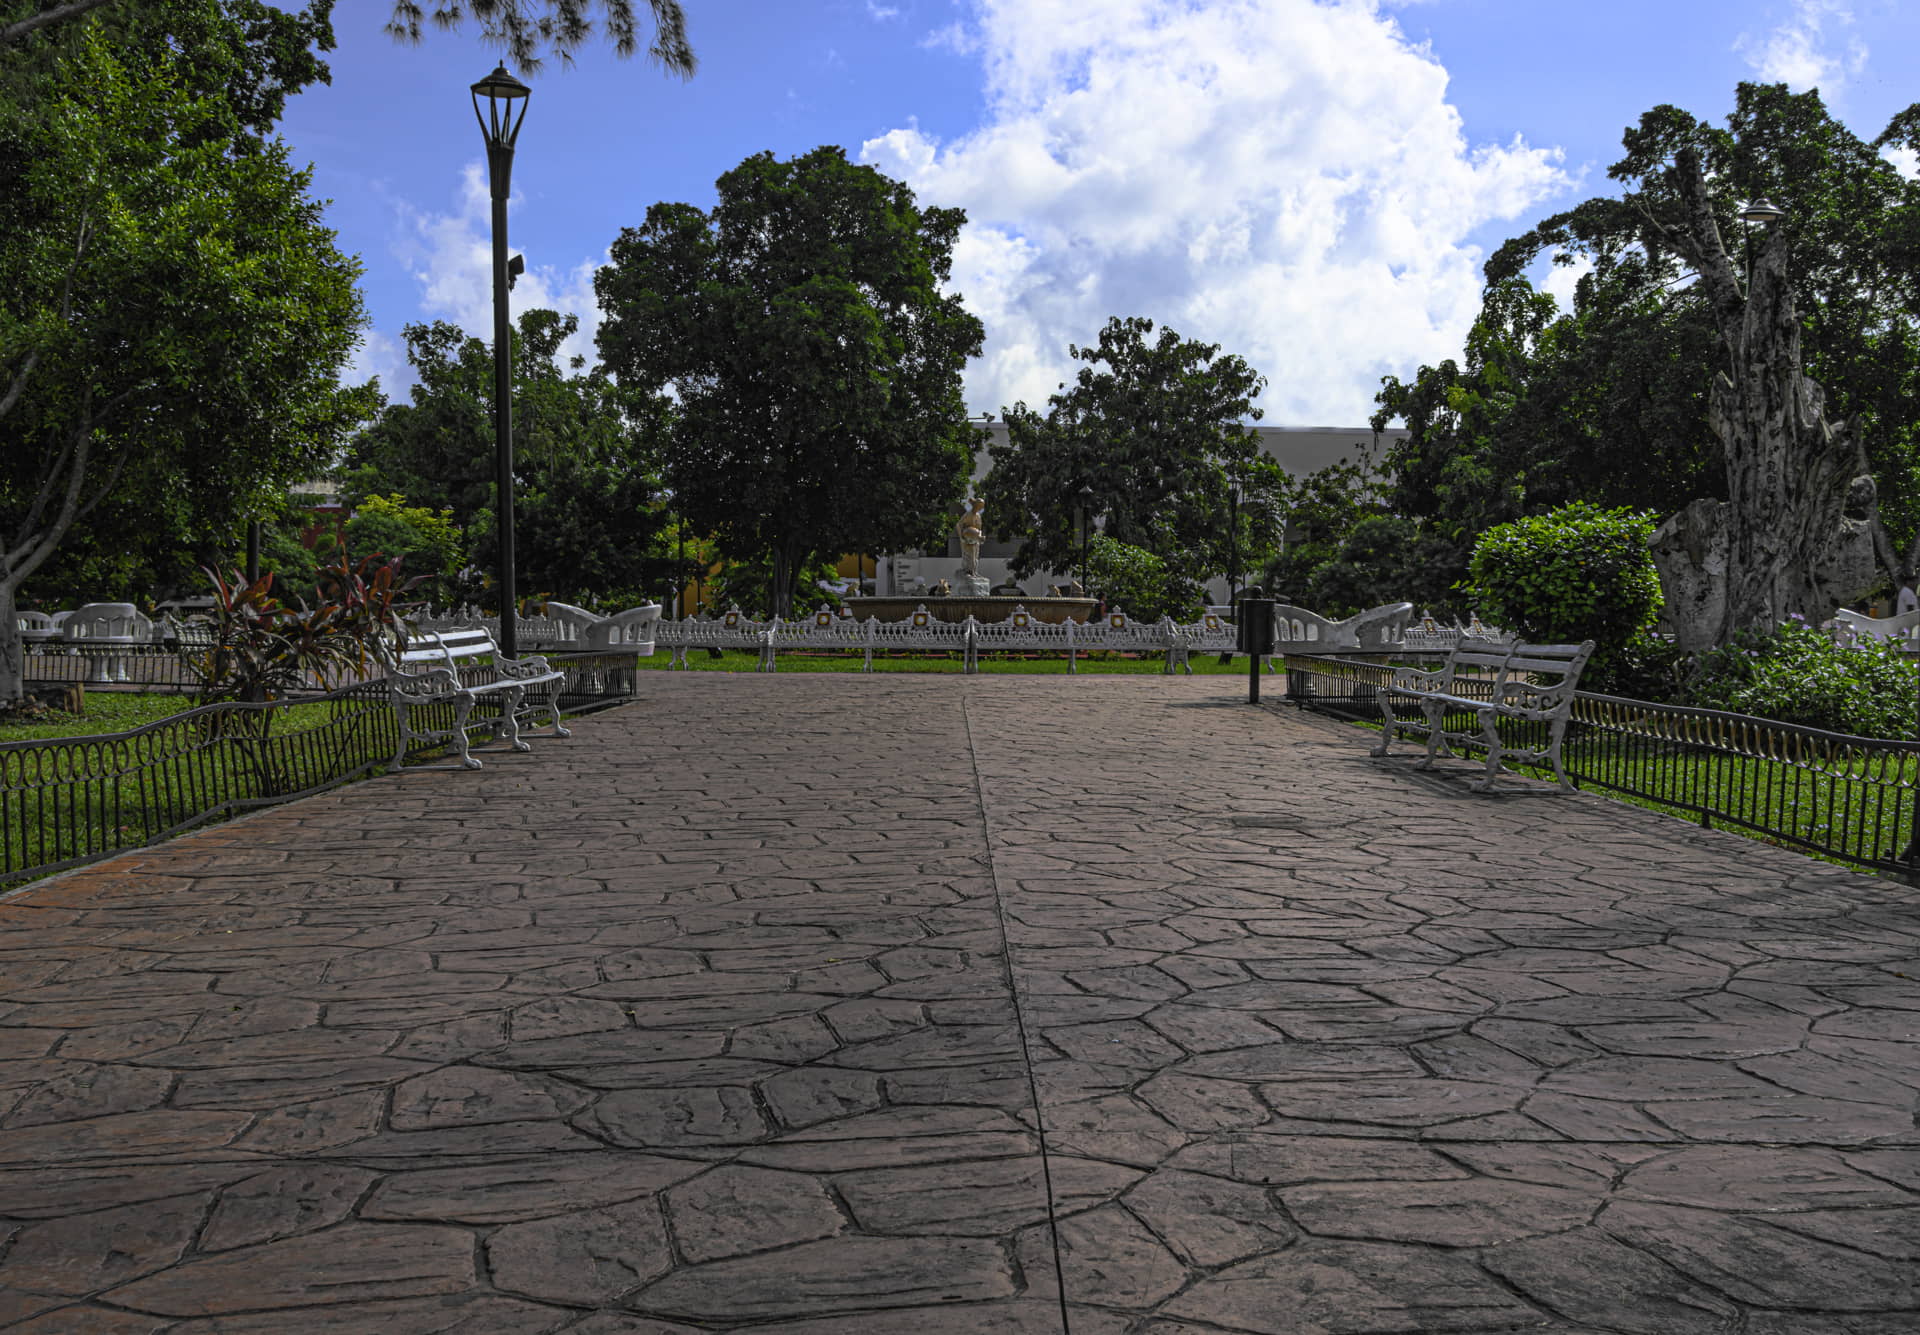  Parque con pavimento de piedra revestido con hormigón impreso en Jávea.
